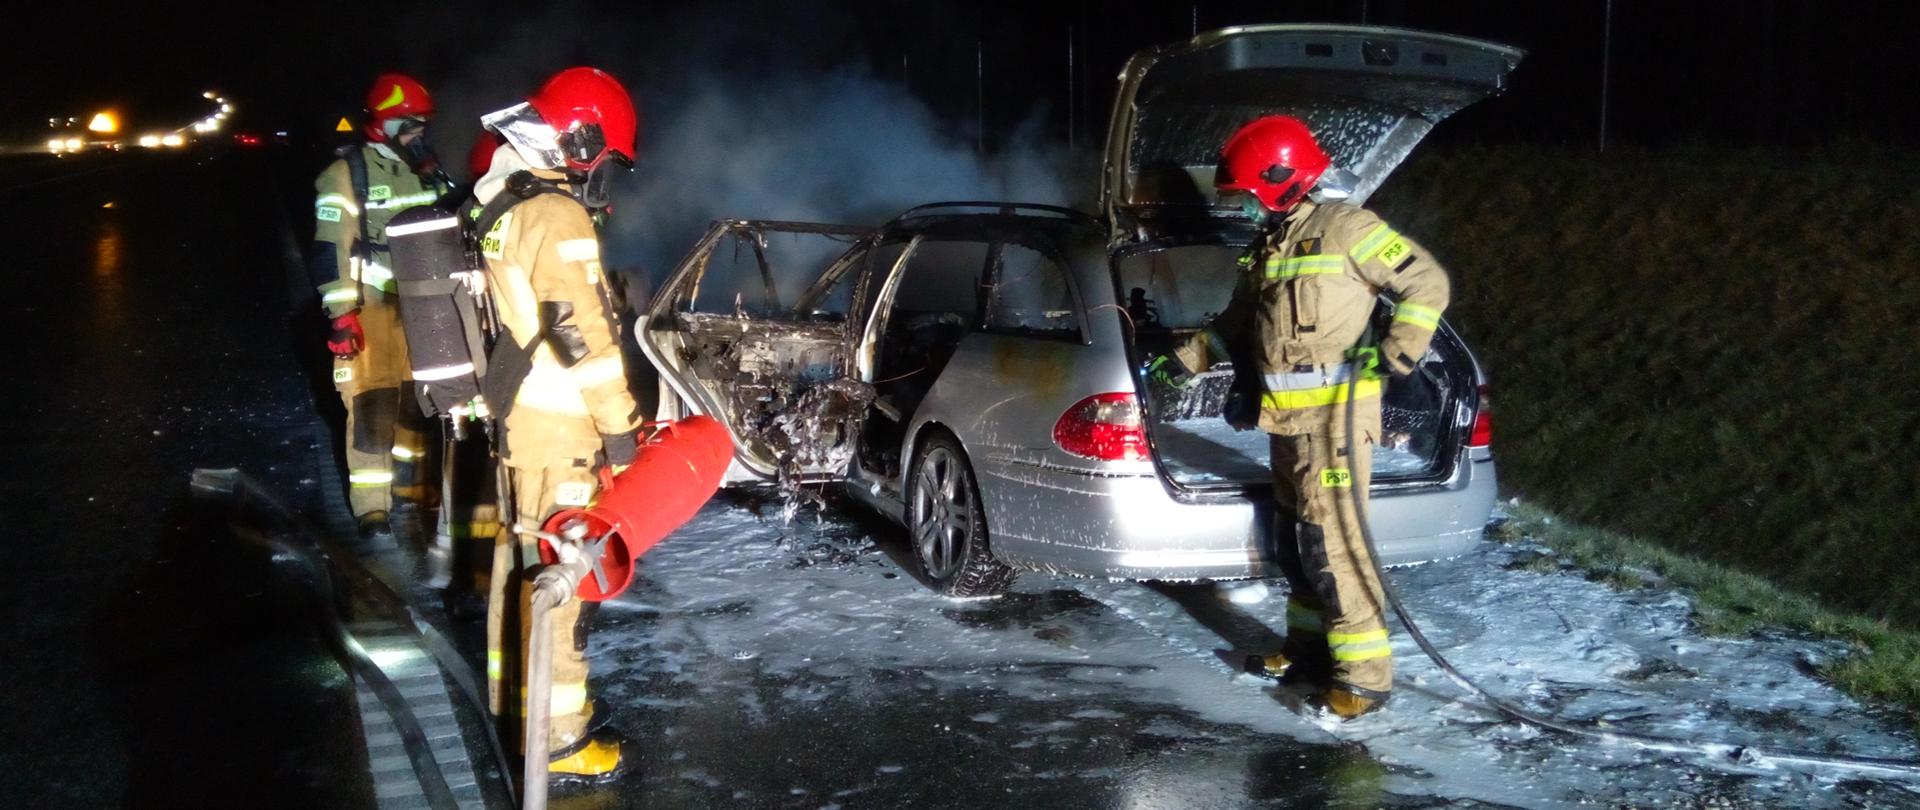 Zdjęcie przedstawia na pierwszym planie strażaków, którzy
zakończyli gaszenie pożaru samochodu. Za nimi znajduje się częściowo
spalony samochód mercedes. Wydobywa się z niego lekki biały dym.
